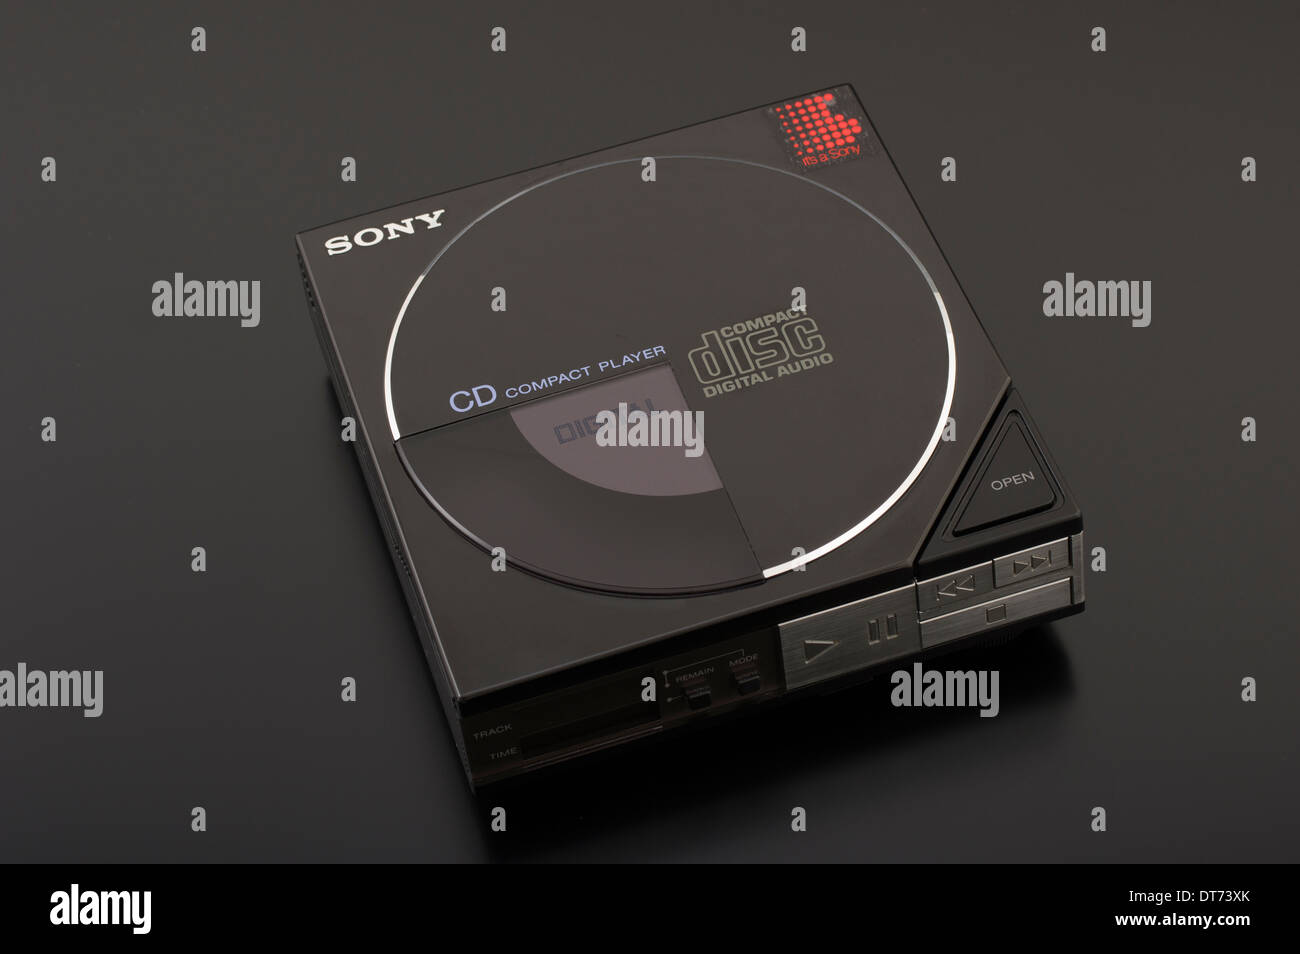 Sony portatile lettore Compact Disc D-5 prima Discman Foto Stock